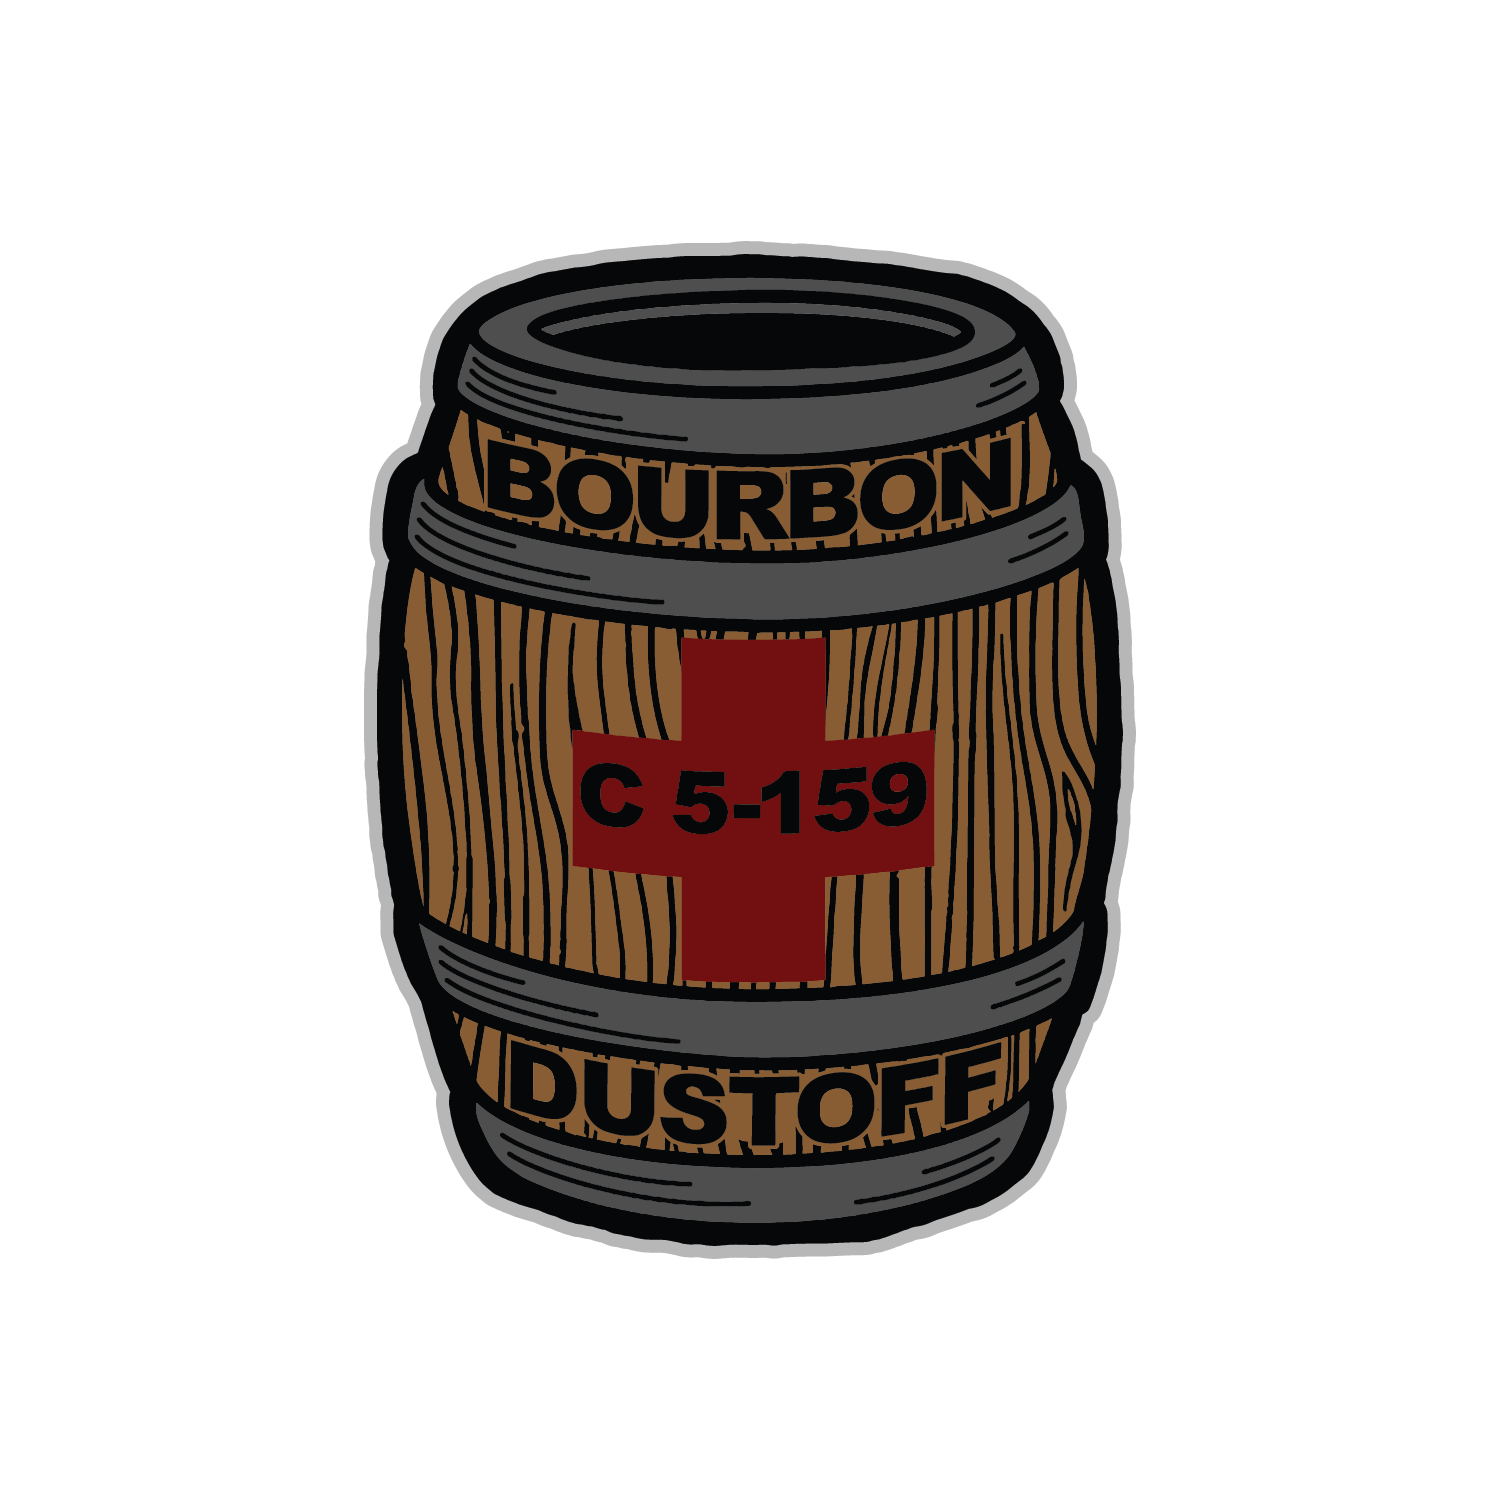 C Med, 5-159th "Bourbon Dustoff"